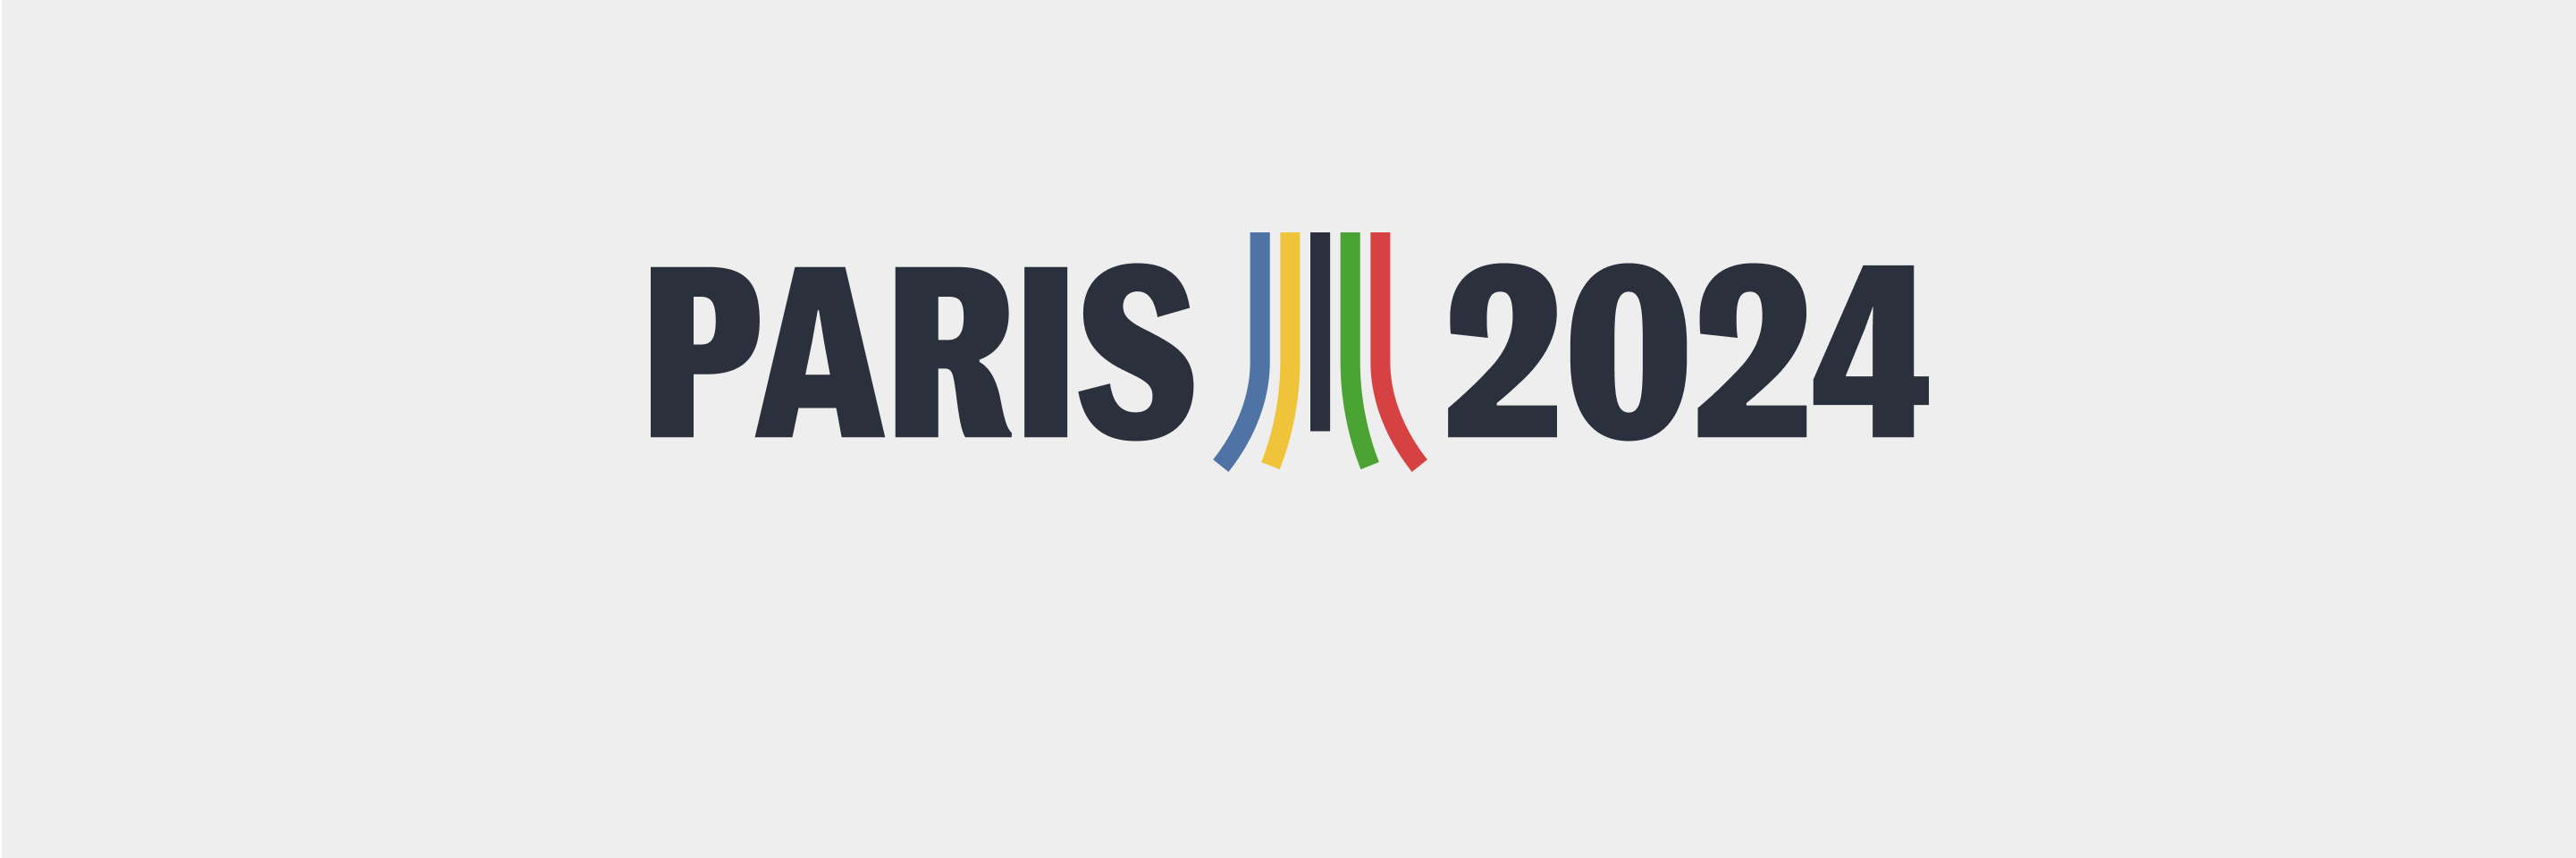 Newsletter Paris 2024 - Le Monde - Inscription et Gestion